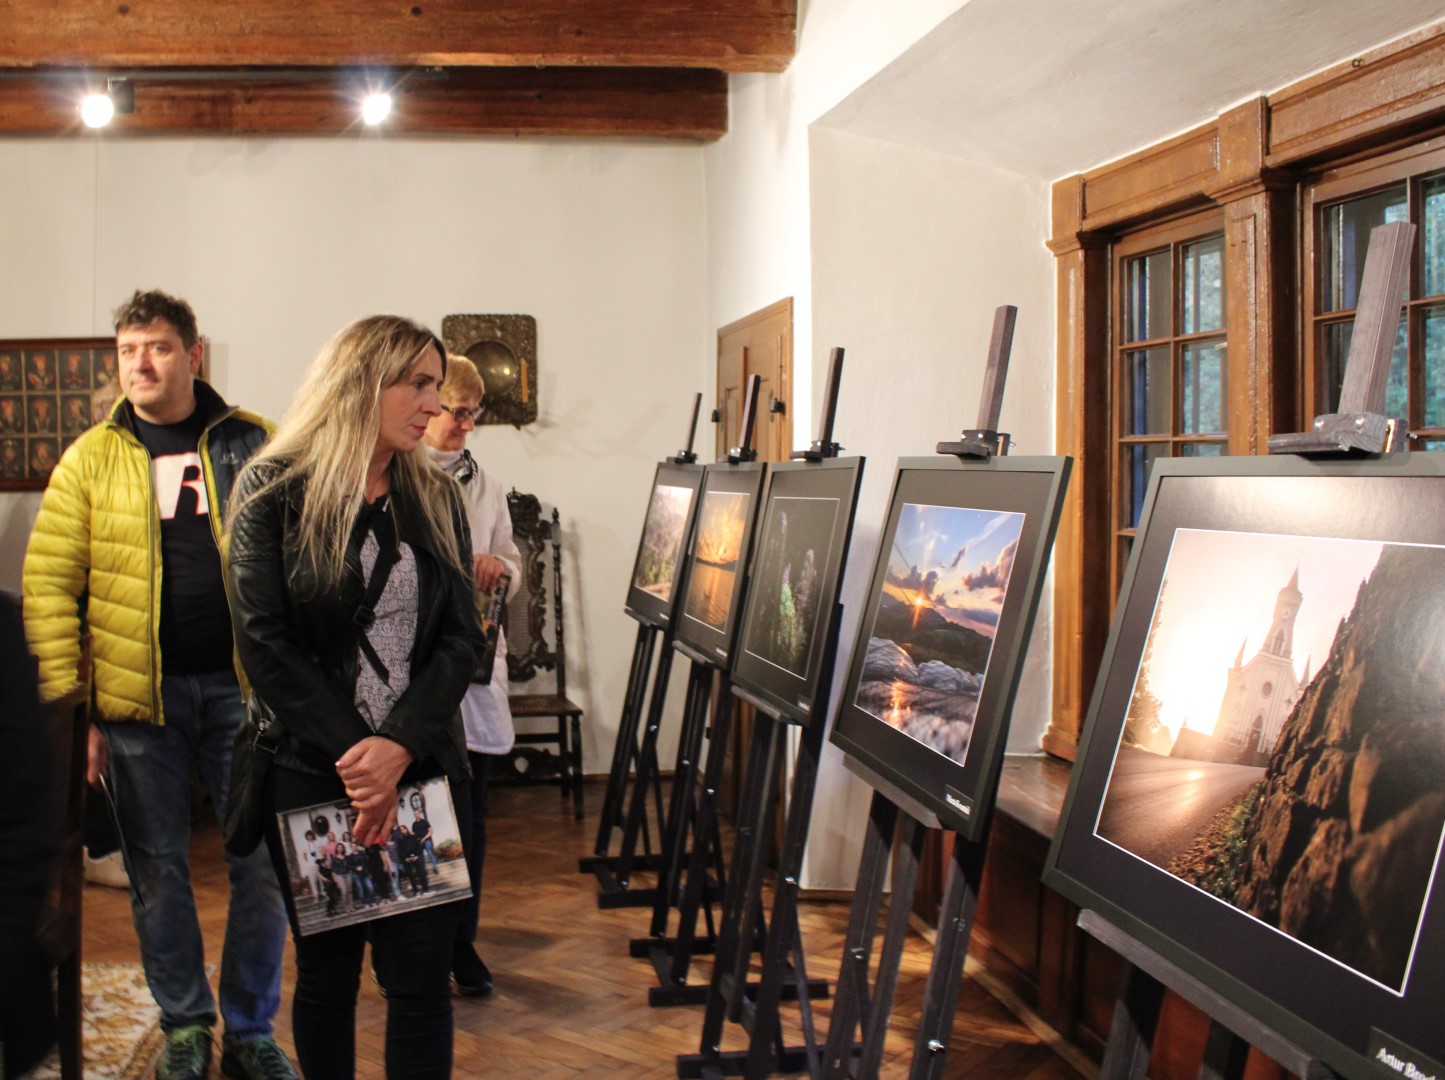 W jednym z pomieszczeń Dworu w Stryszowie stoją ustawione na sztalugach zdjęcia projektowe, trzy osoby przechodzą oglądając je.